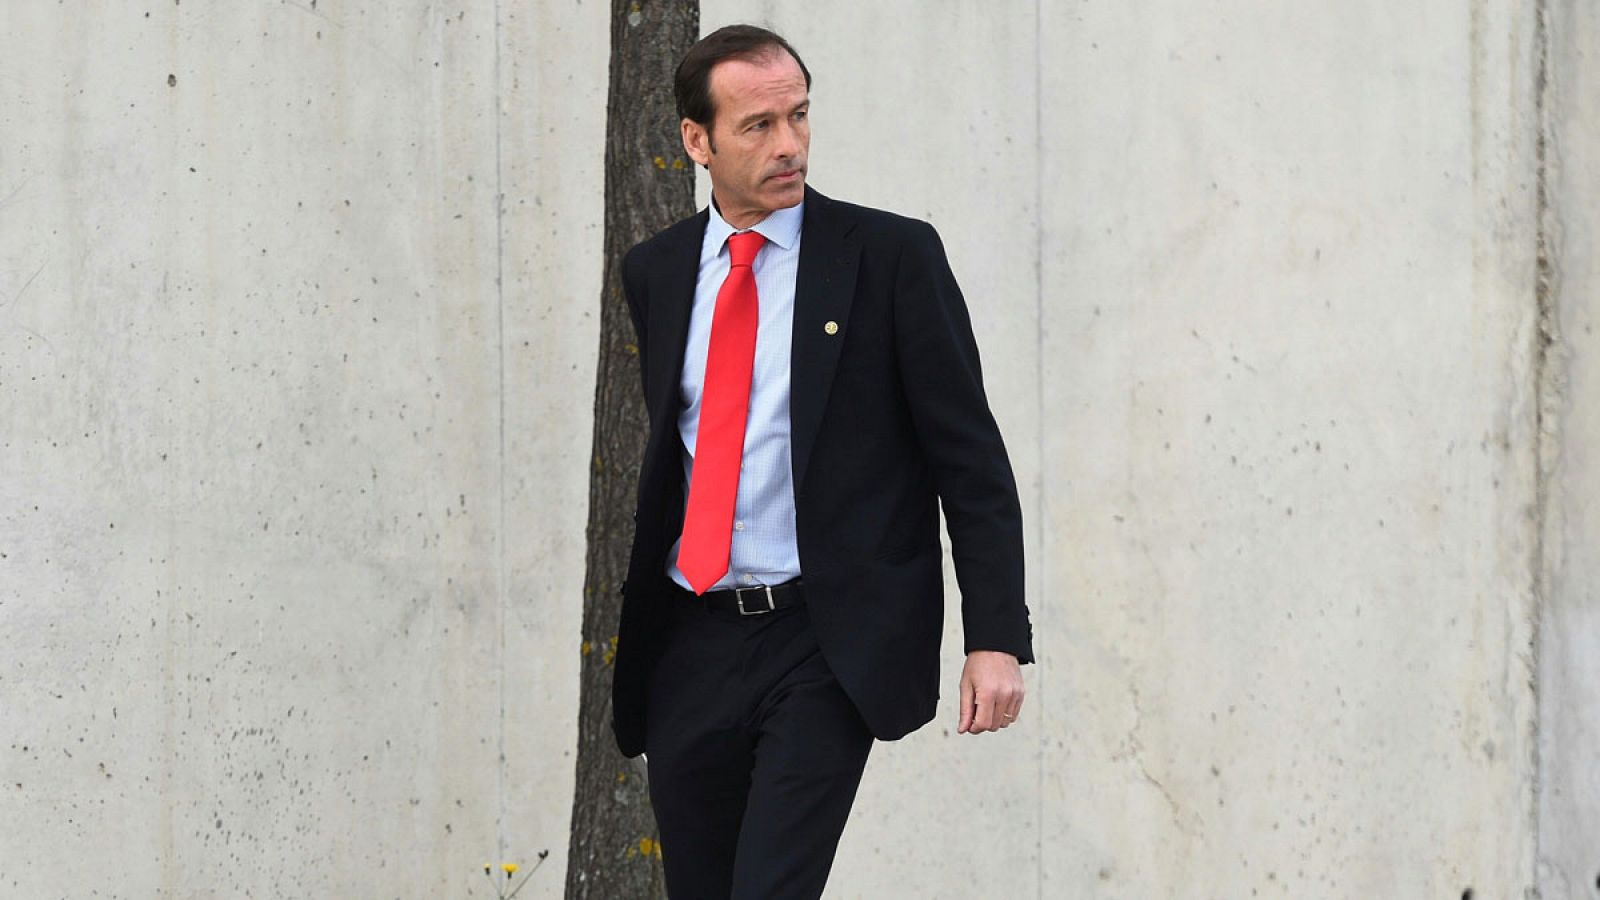 El inspector del Banco de España José Antonio Casaus ha declarado este martes ante la Audiencia Nacional como testigo en el juicio por la salida a bolsa de Bankia